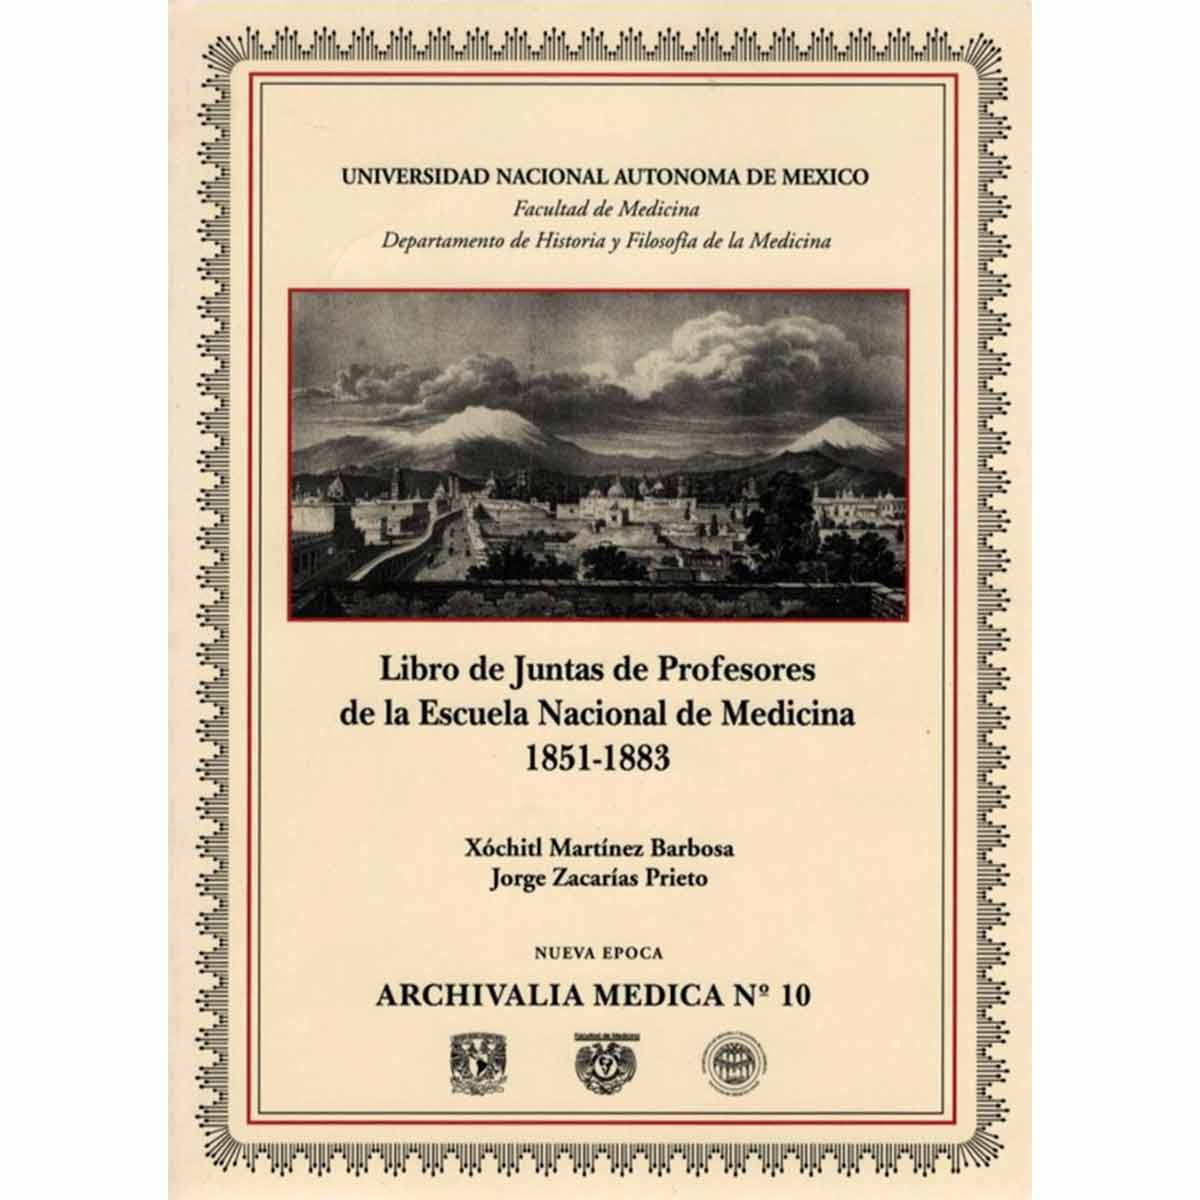 ARCHIVALIA MEDICA No. 10 LIBRO DE JUNTAS DE PROFESORES DE LA ESCUELA NACIONAL DE MEDICINA 1851-1883